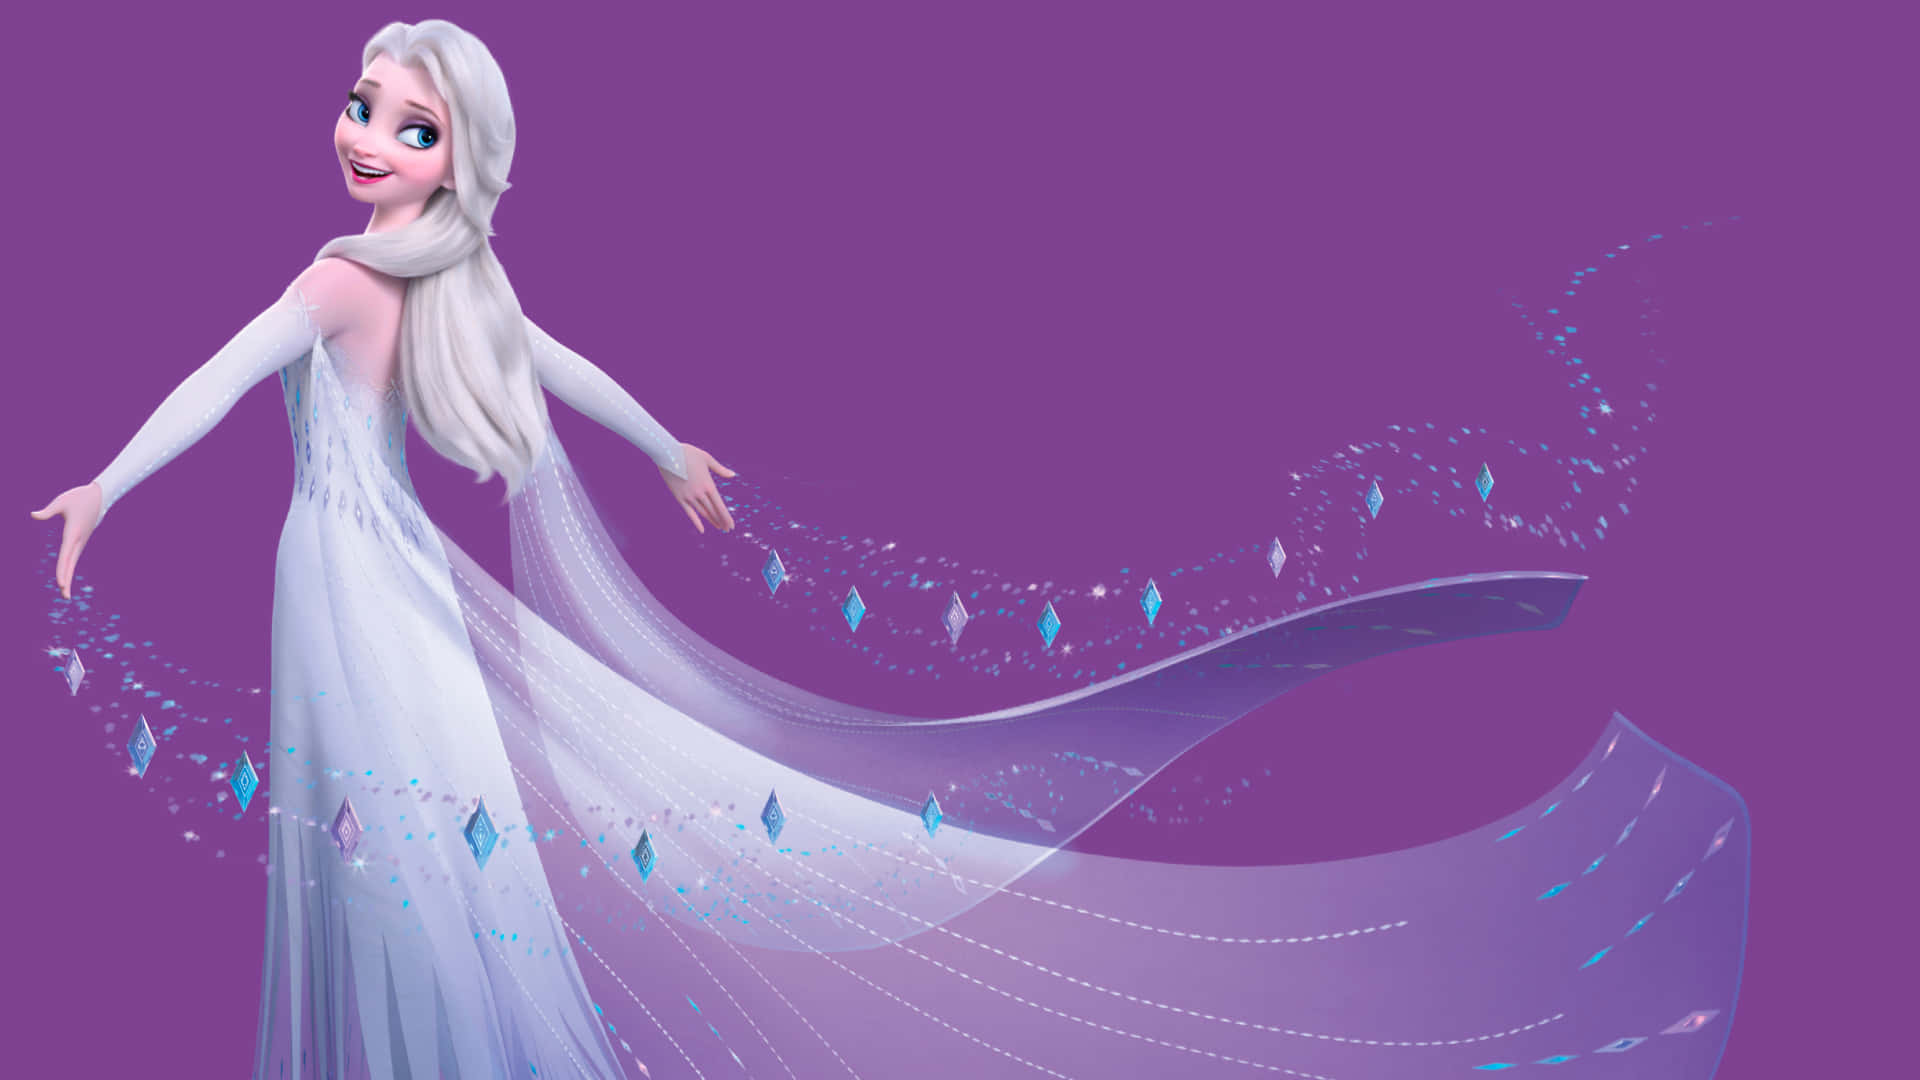 Elsai Sin Vita Klänning Från Disney-filmen Frozen 2. Wallpaper